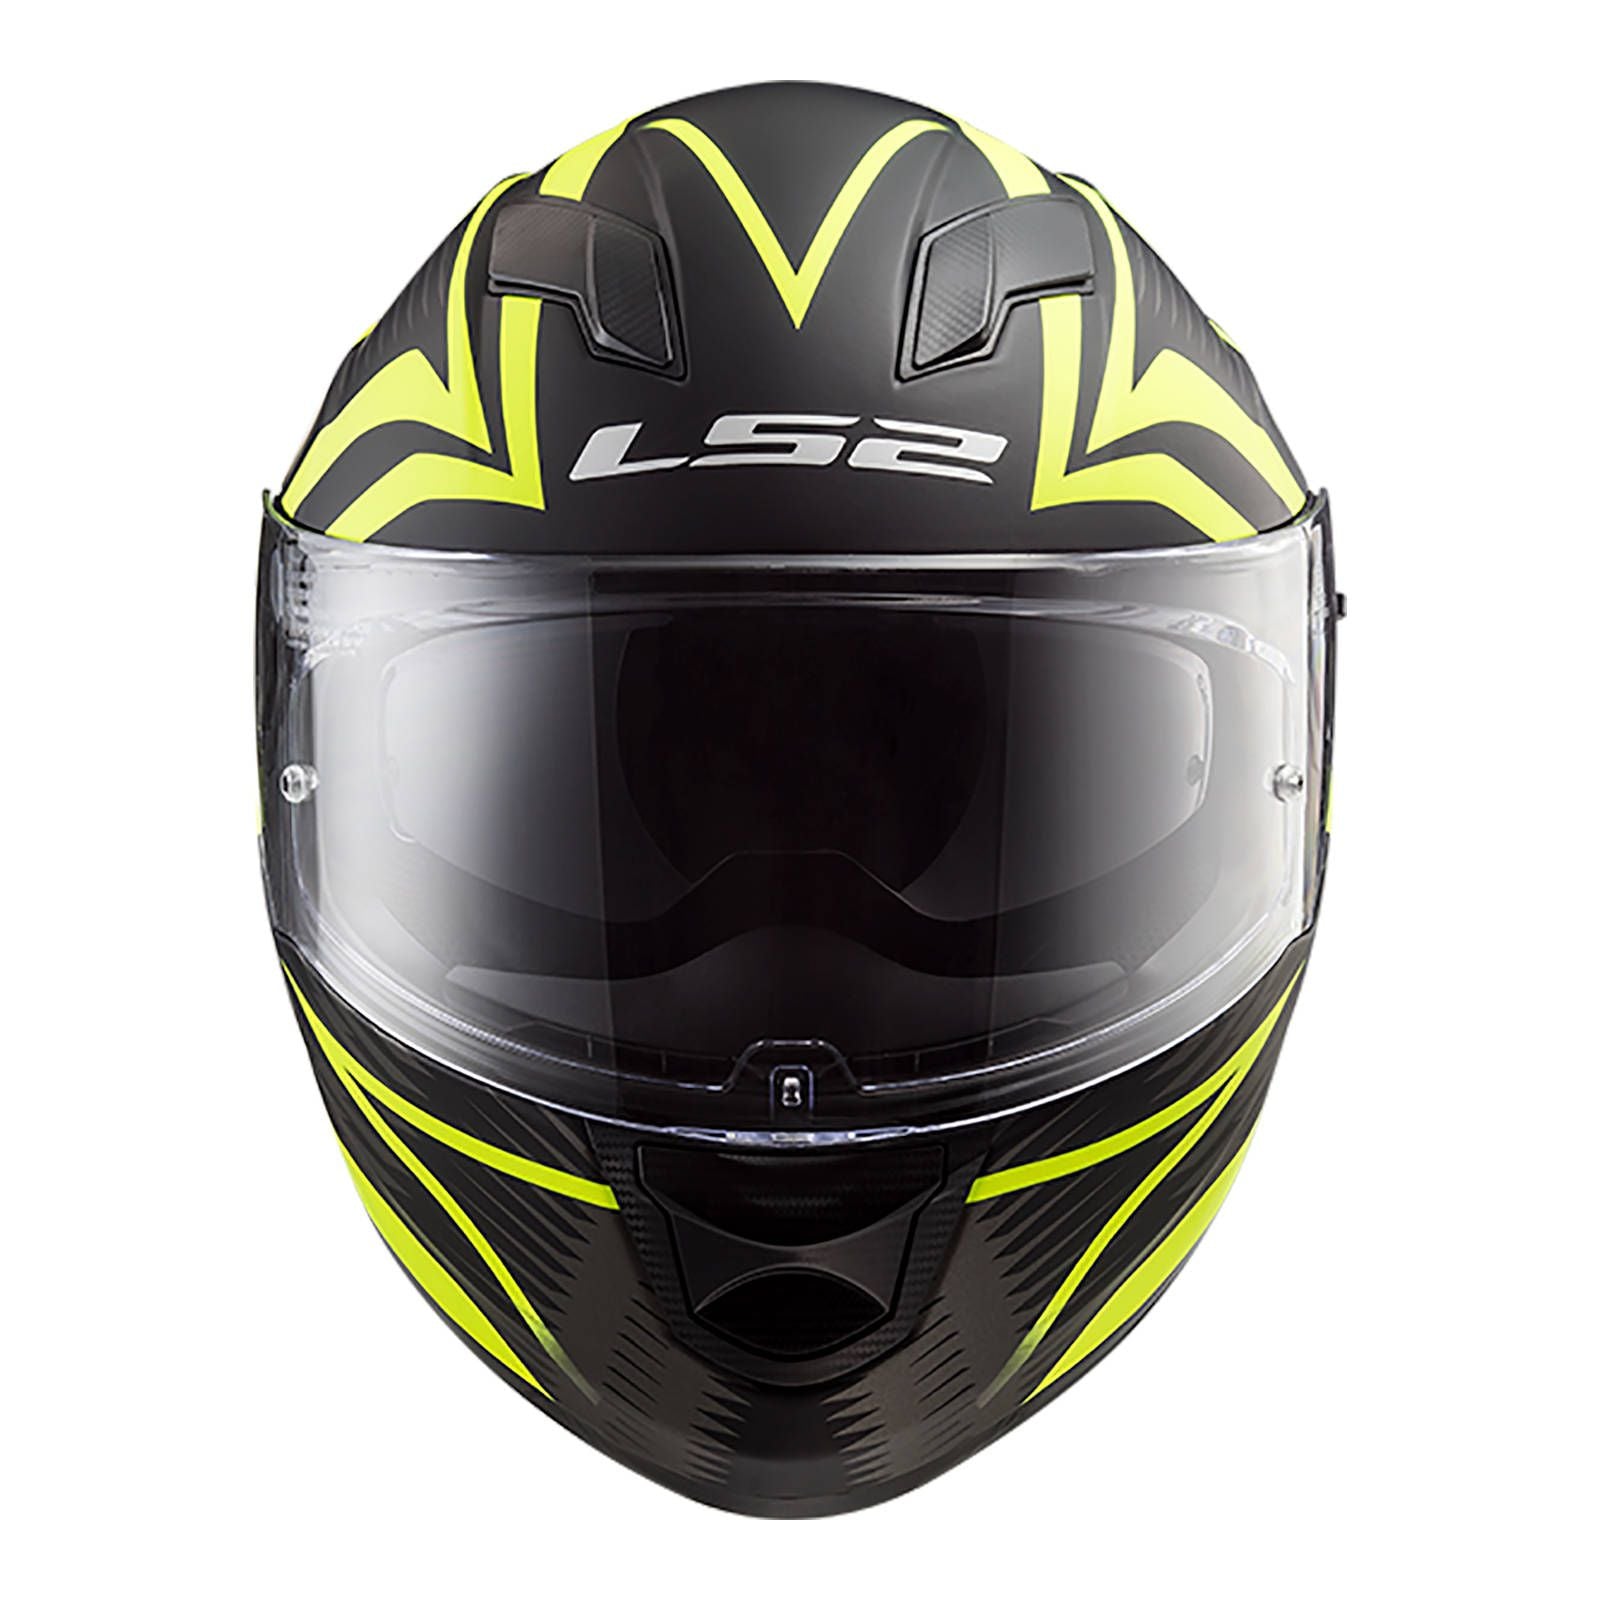 LS2 FF320 Stream EVO Jink Helmet - Matte Black / Hi-Vis (XS) #LS2FF320JINMBYXS